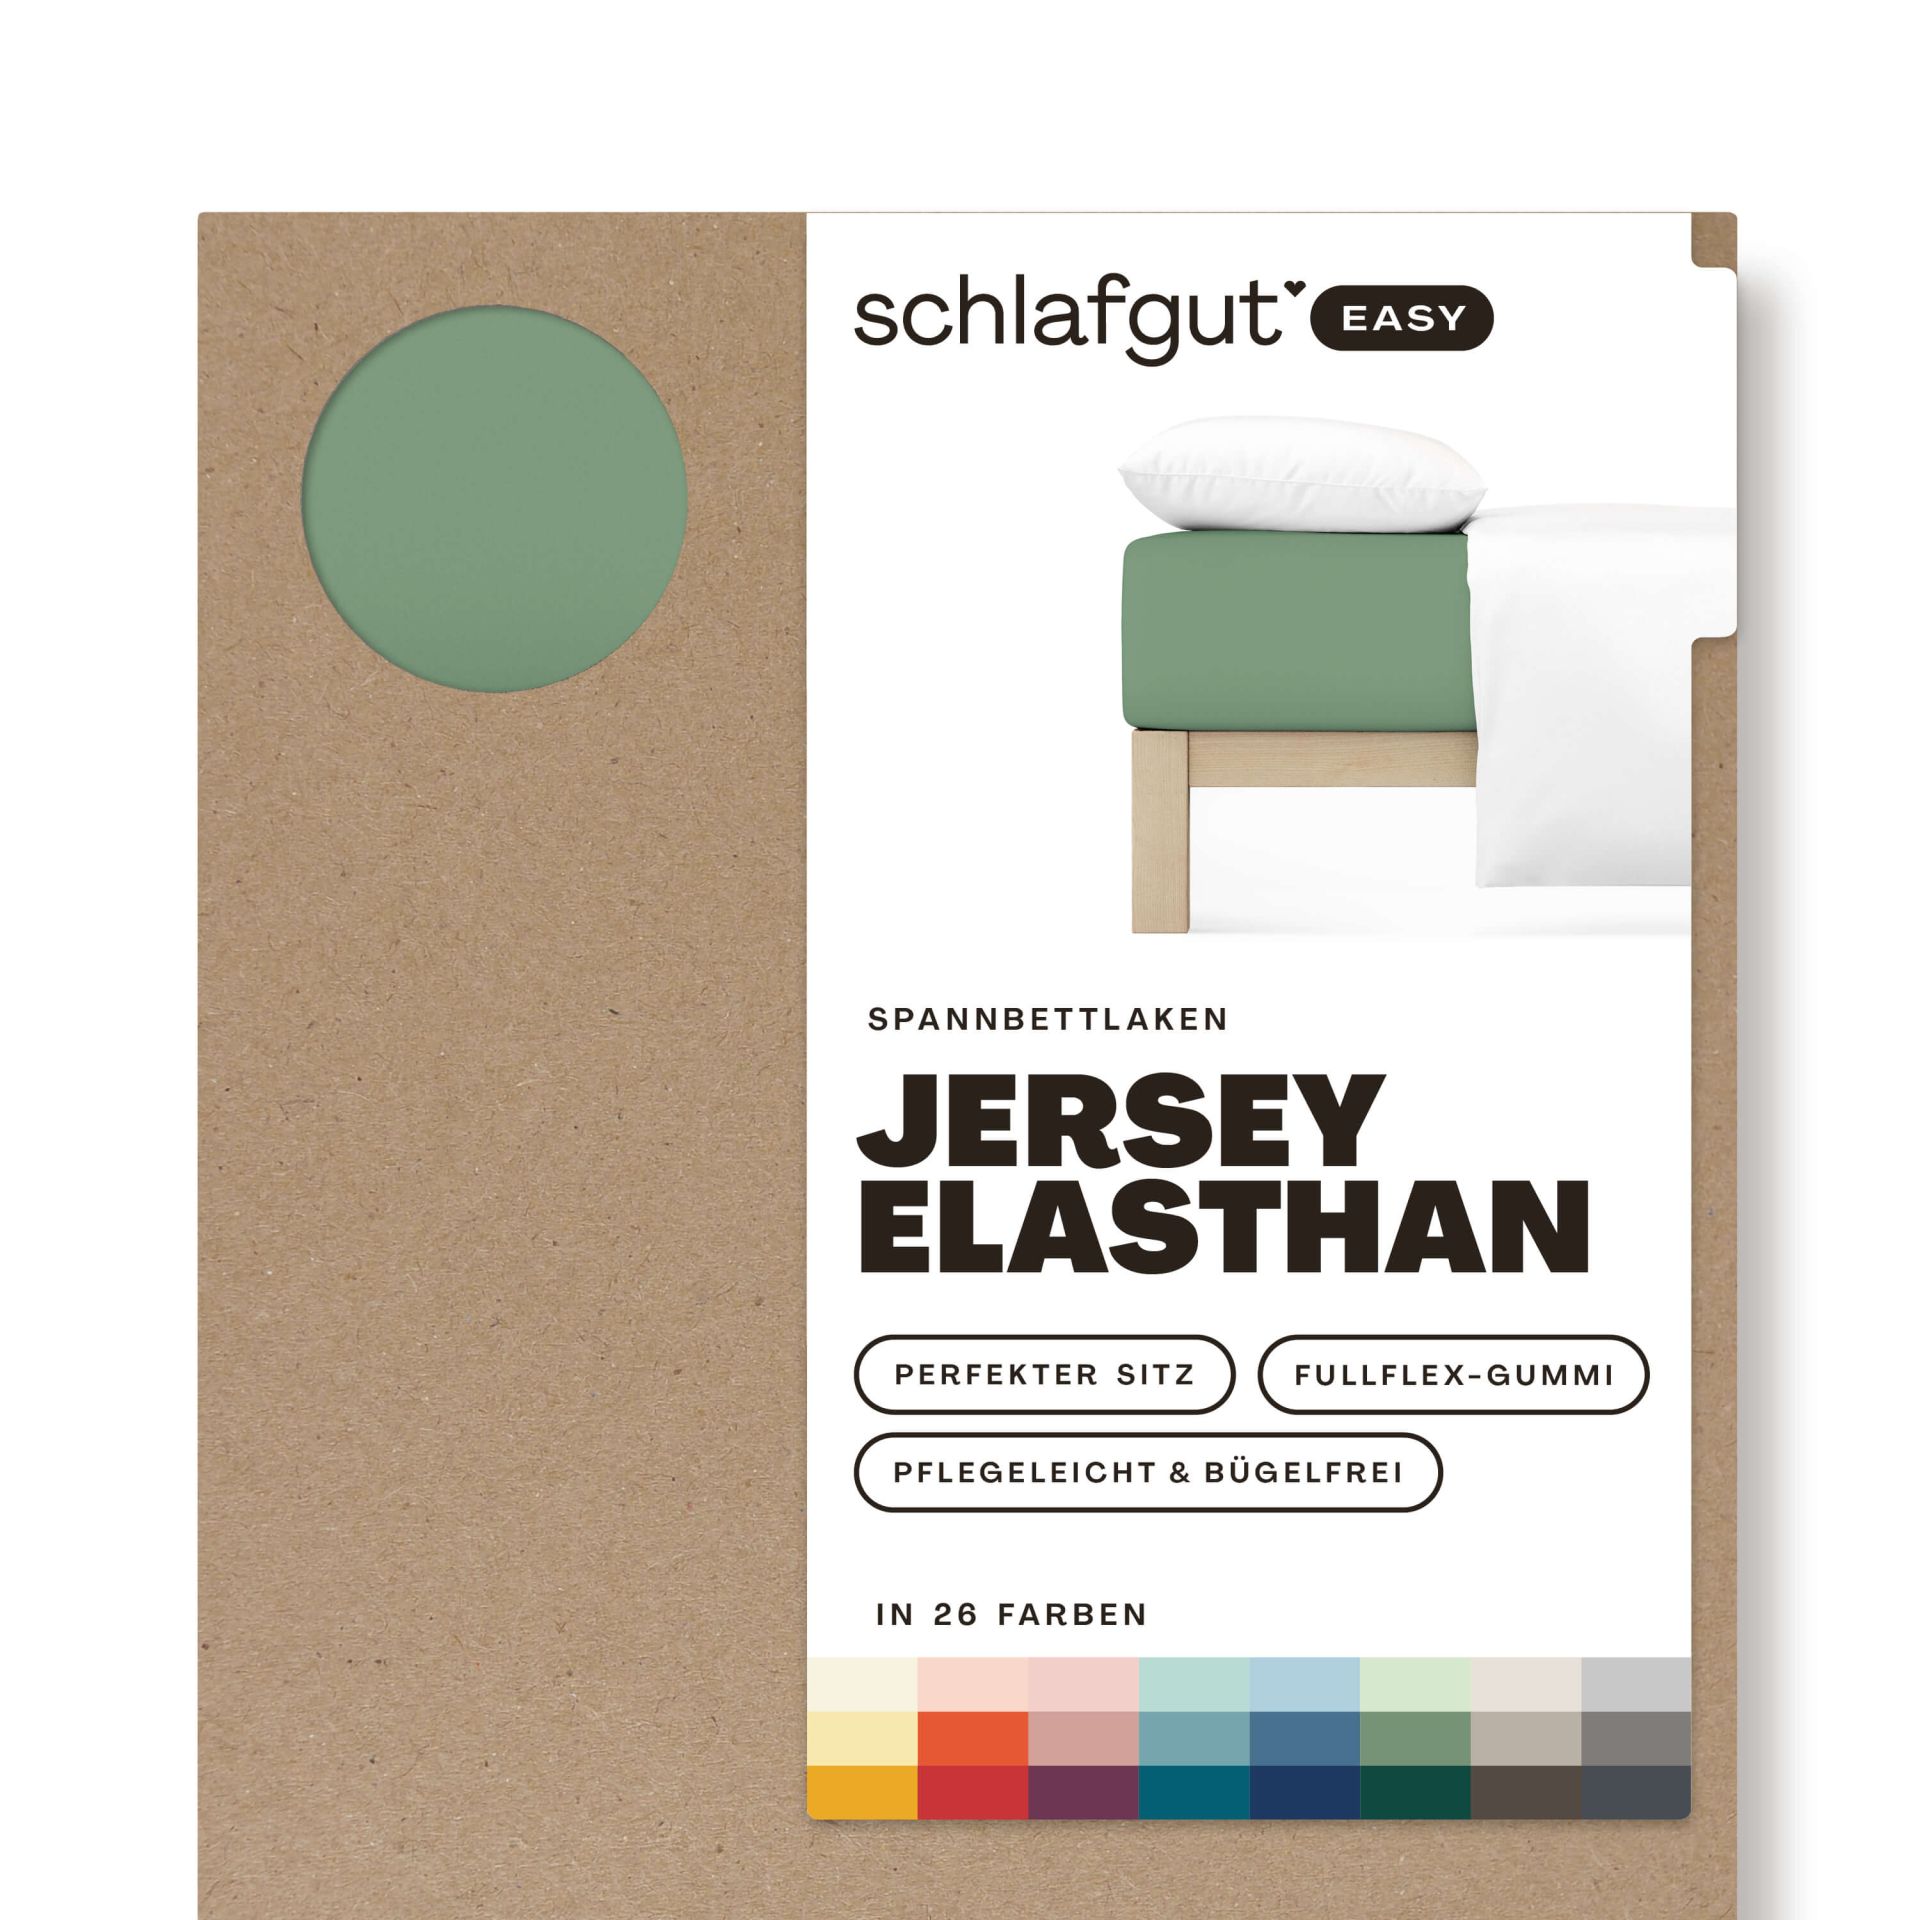 Das Produktbild vom Spannbettlaken der Reihe Easy Elasthan in Farbe green mid von Schlafgut